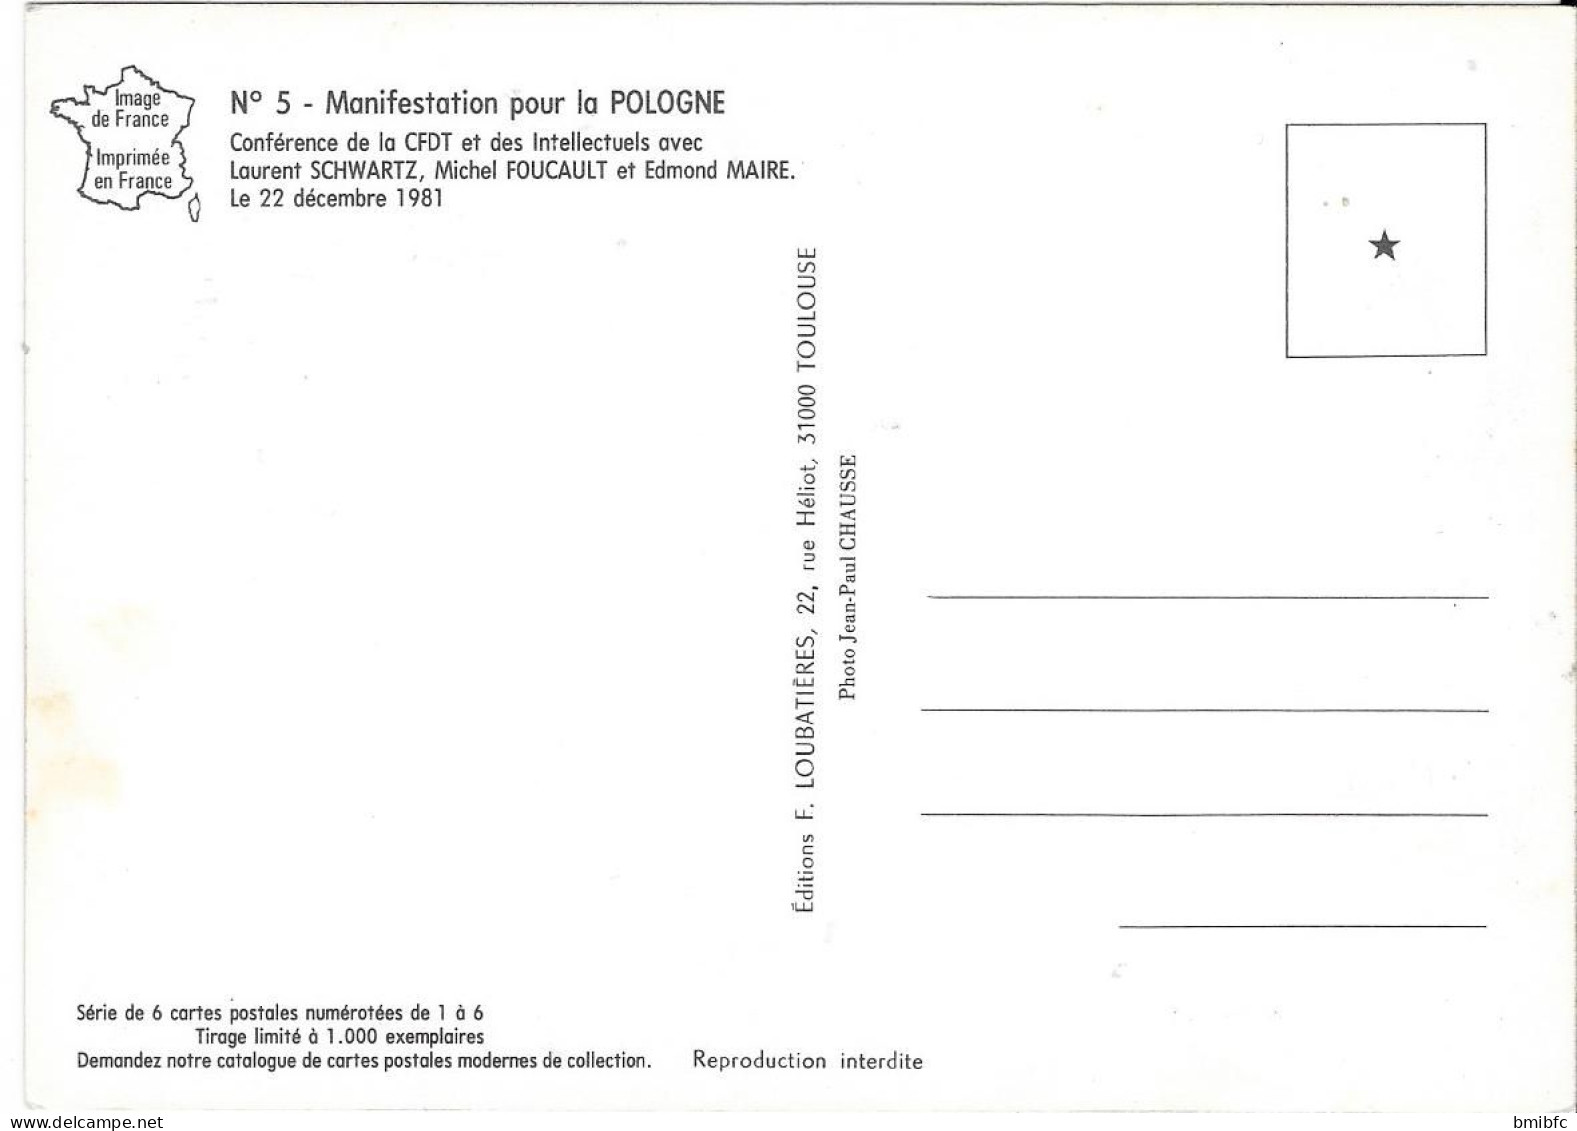 Série de 6 cartes en tirage limité (1000 exemplaires)  - MANIFESTATION POUR LA POLOGNE 1981